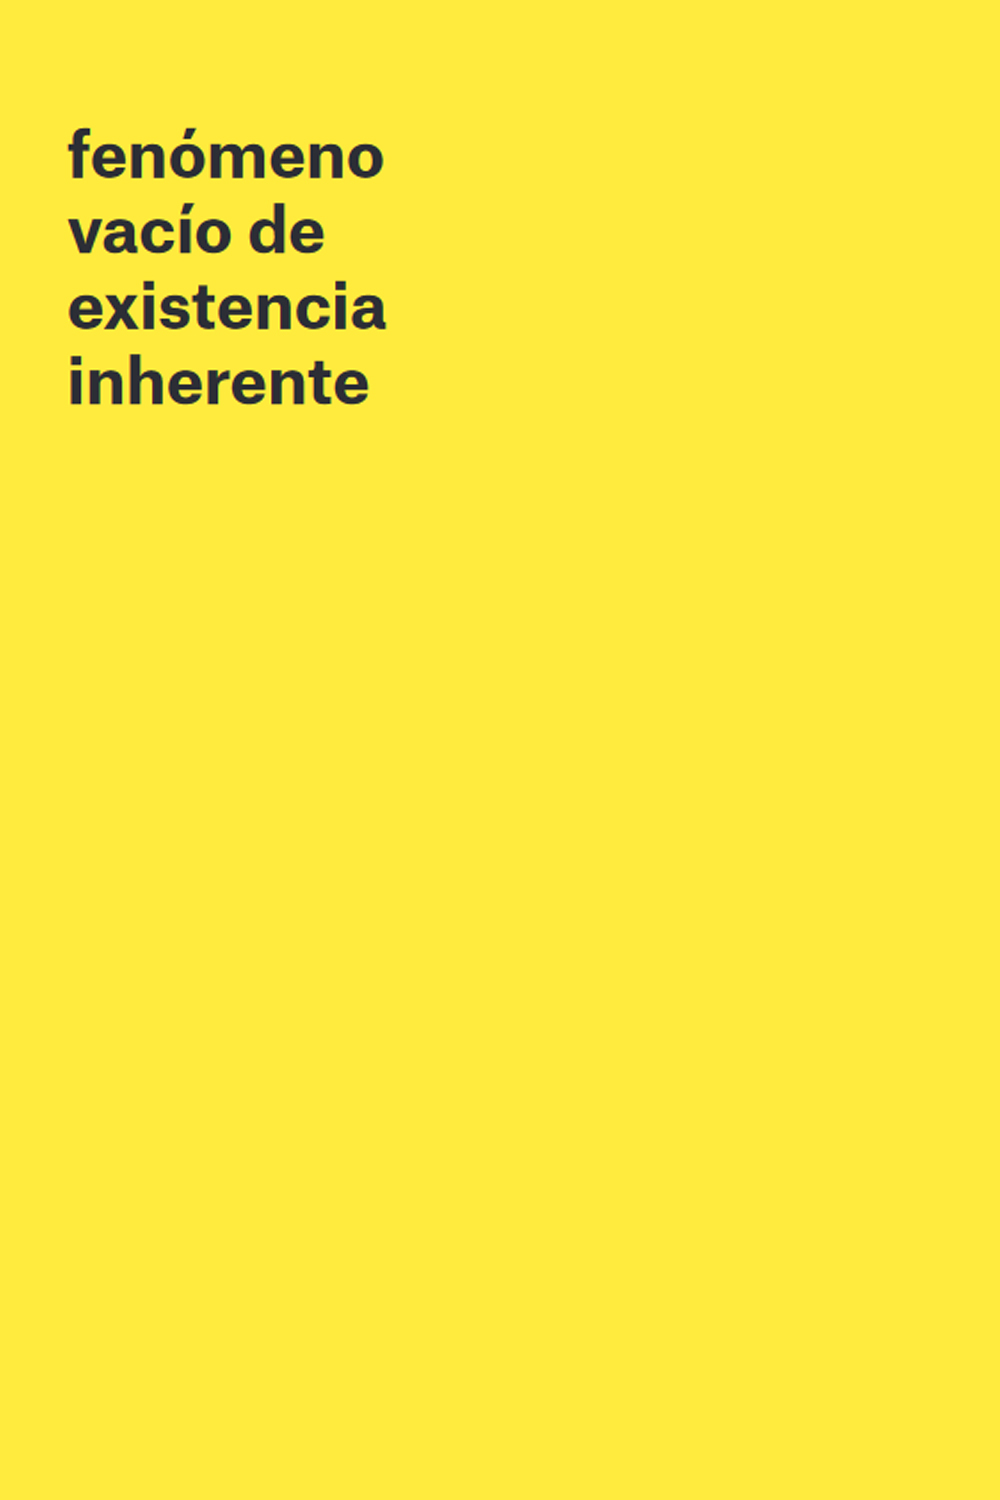 Libro-Fenomeno vacio de existencia inherente-Mariana-Perez-Villoro